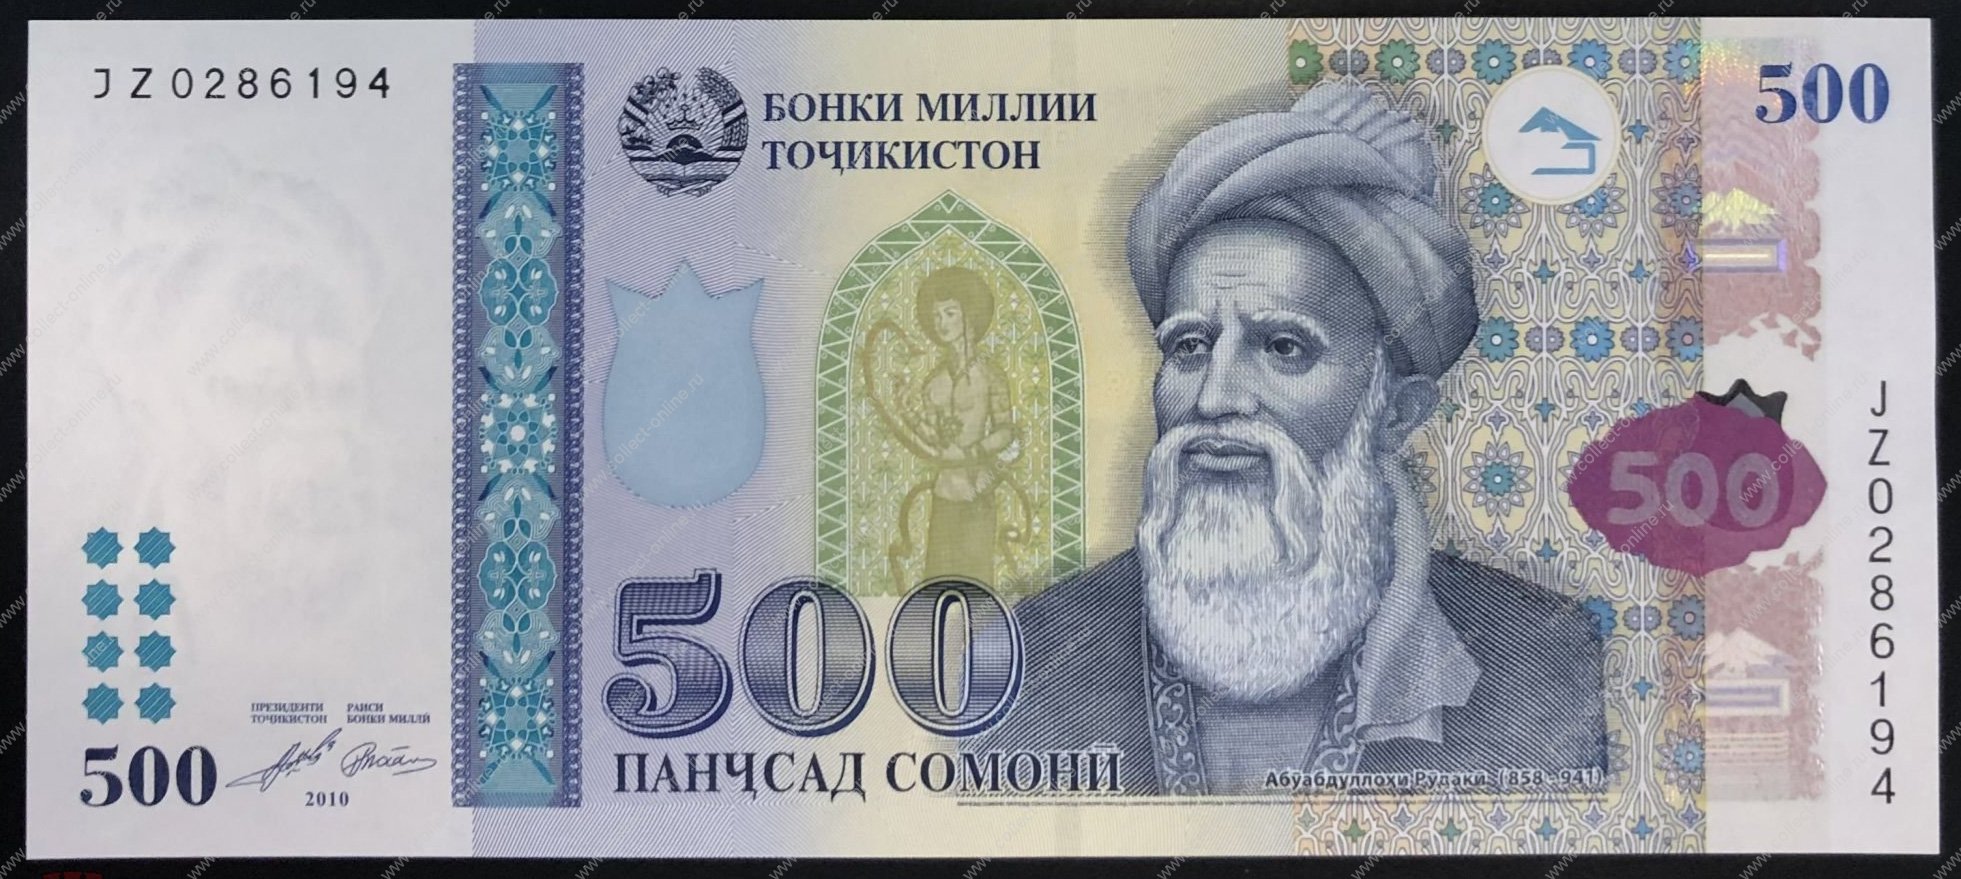 100 на таджикский. Купюра Таджикистана 500 Сомони. 100 Сомони Таджикистан. Деньги Таджикистана 500. Таджикский купюры 500 Сомони.